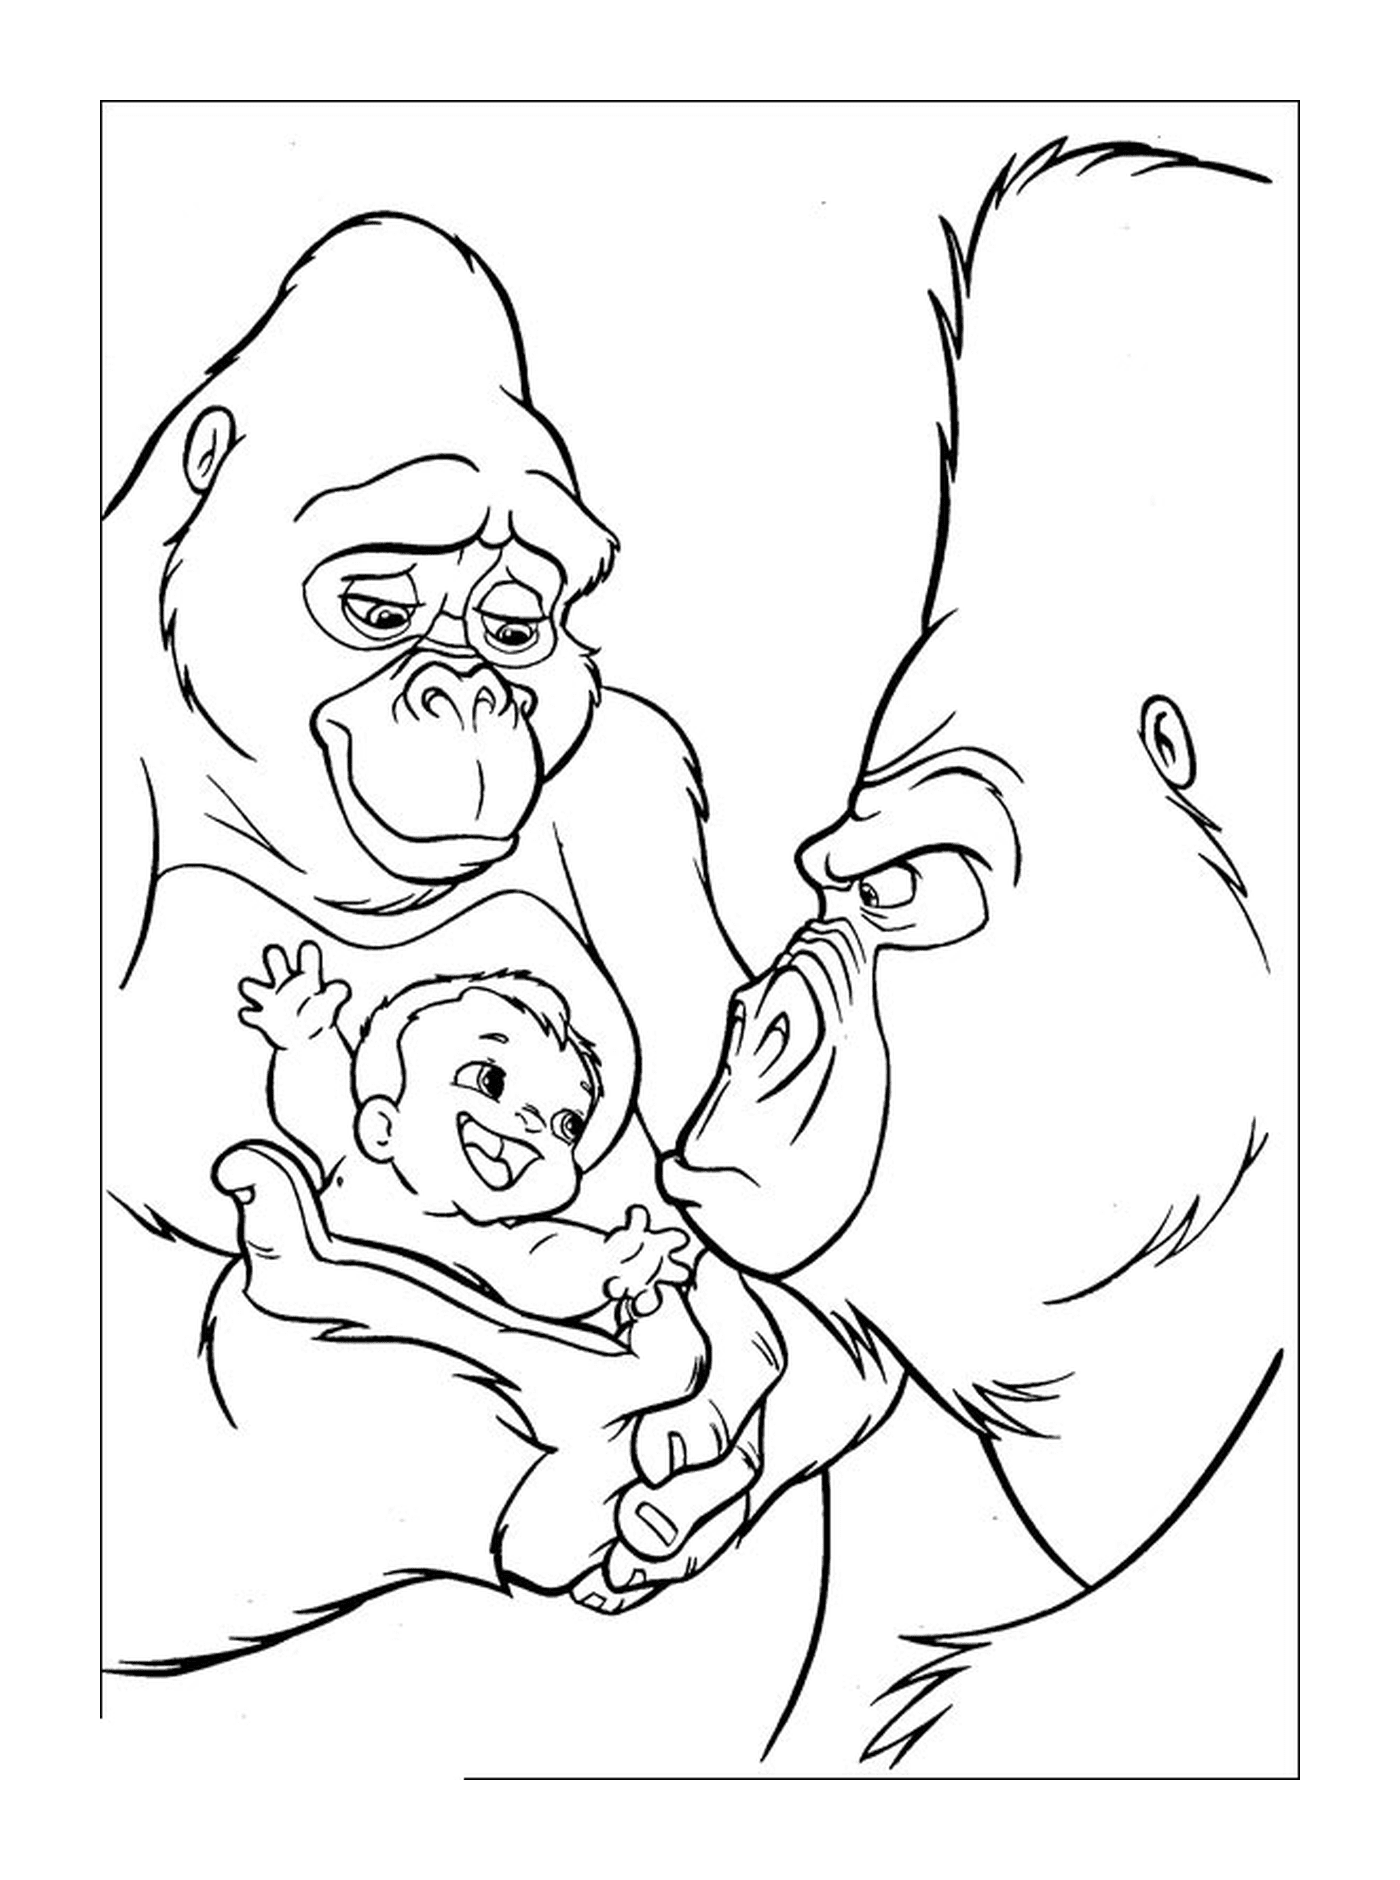  Gorila adulto e bebê gorila com um bebê 